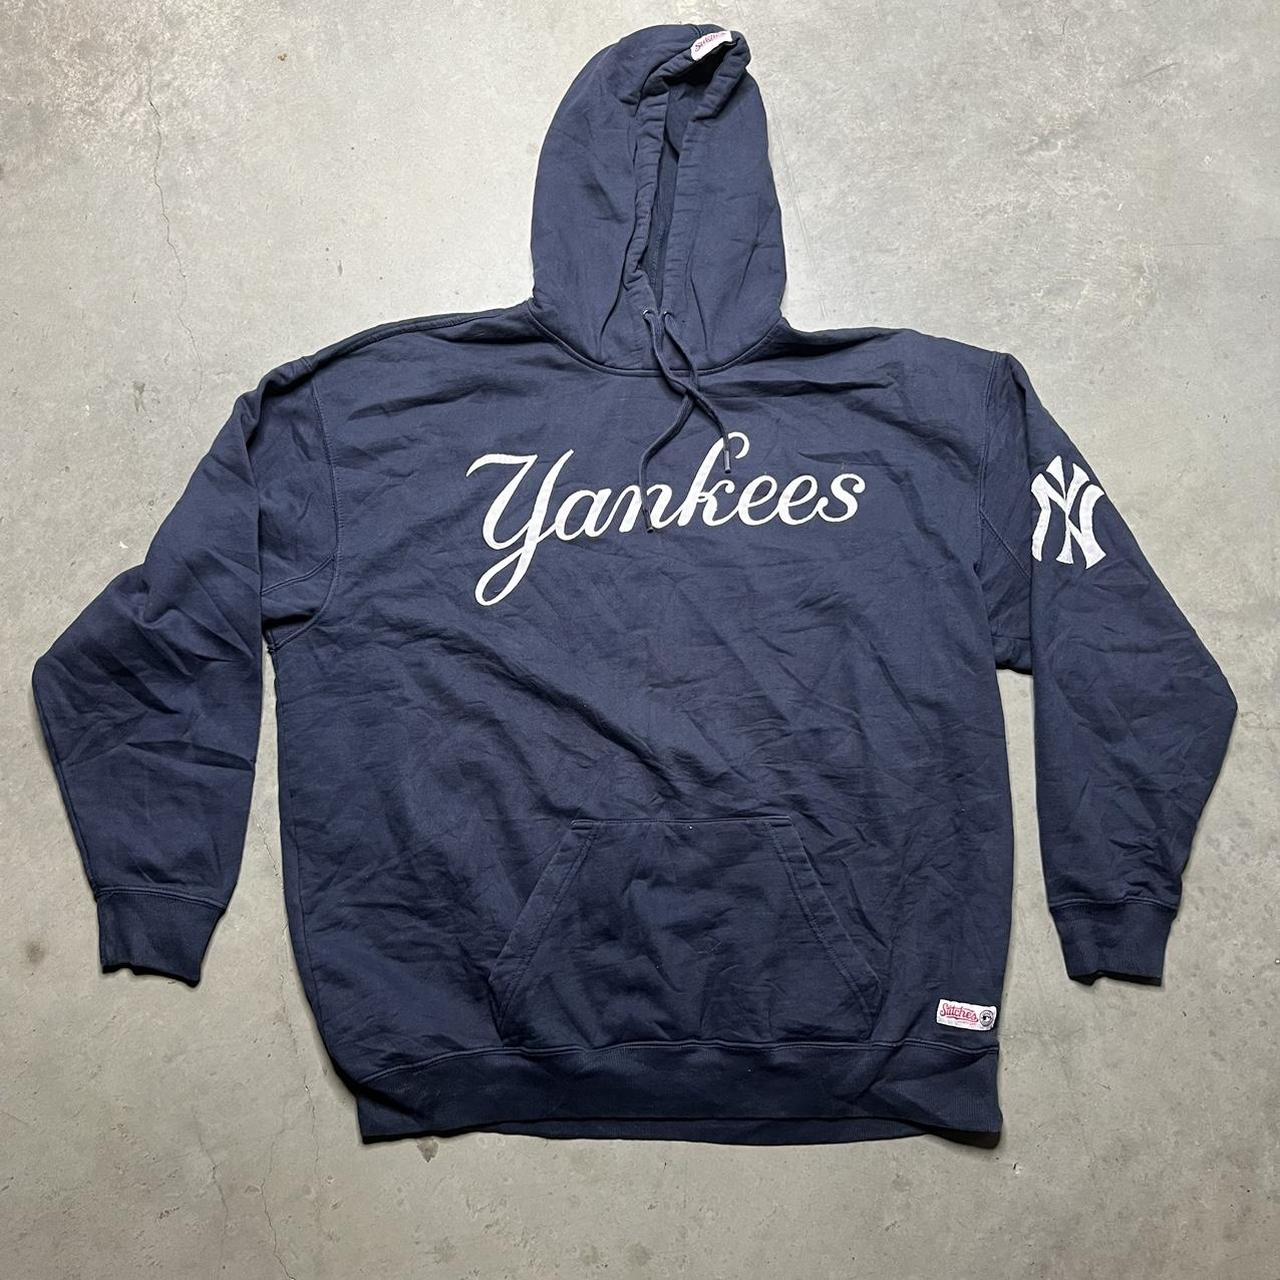 Vintage Yankees hoodie “Stitches Athletic